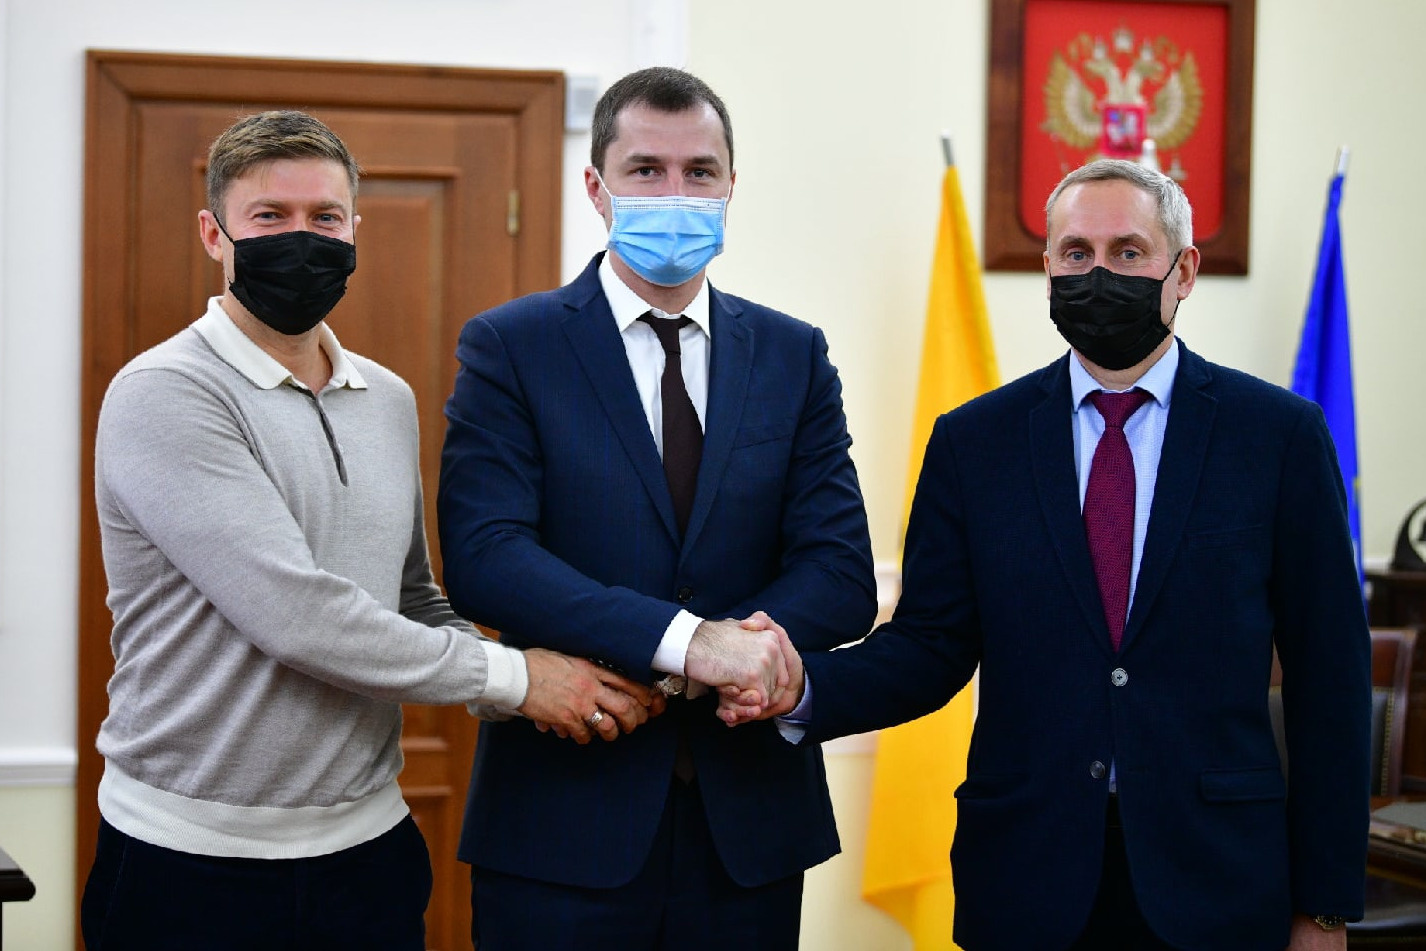 Галагаев и Ильин встретились в кабинете у мэра Ярославля